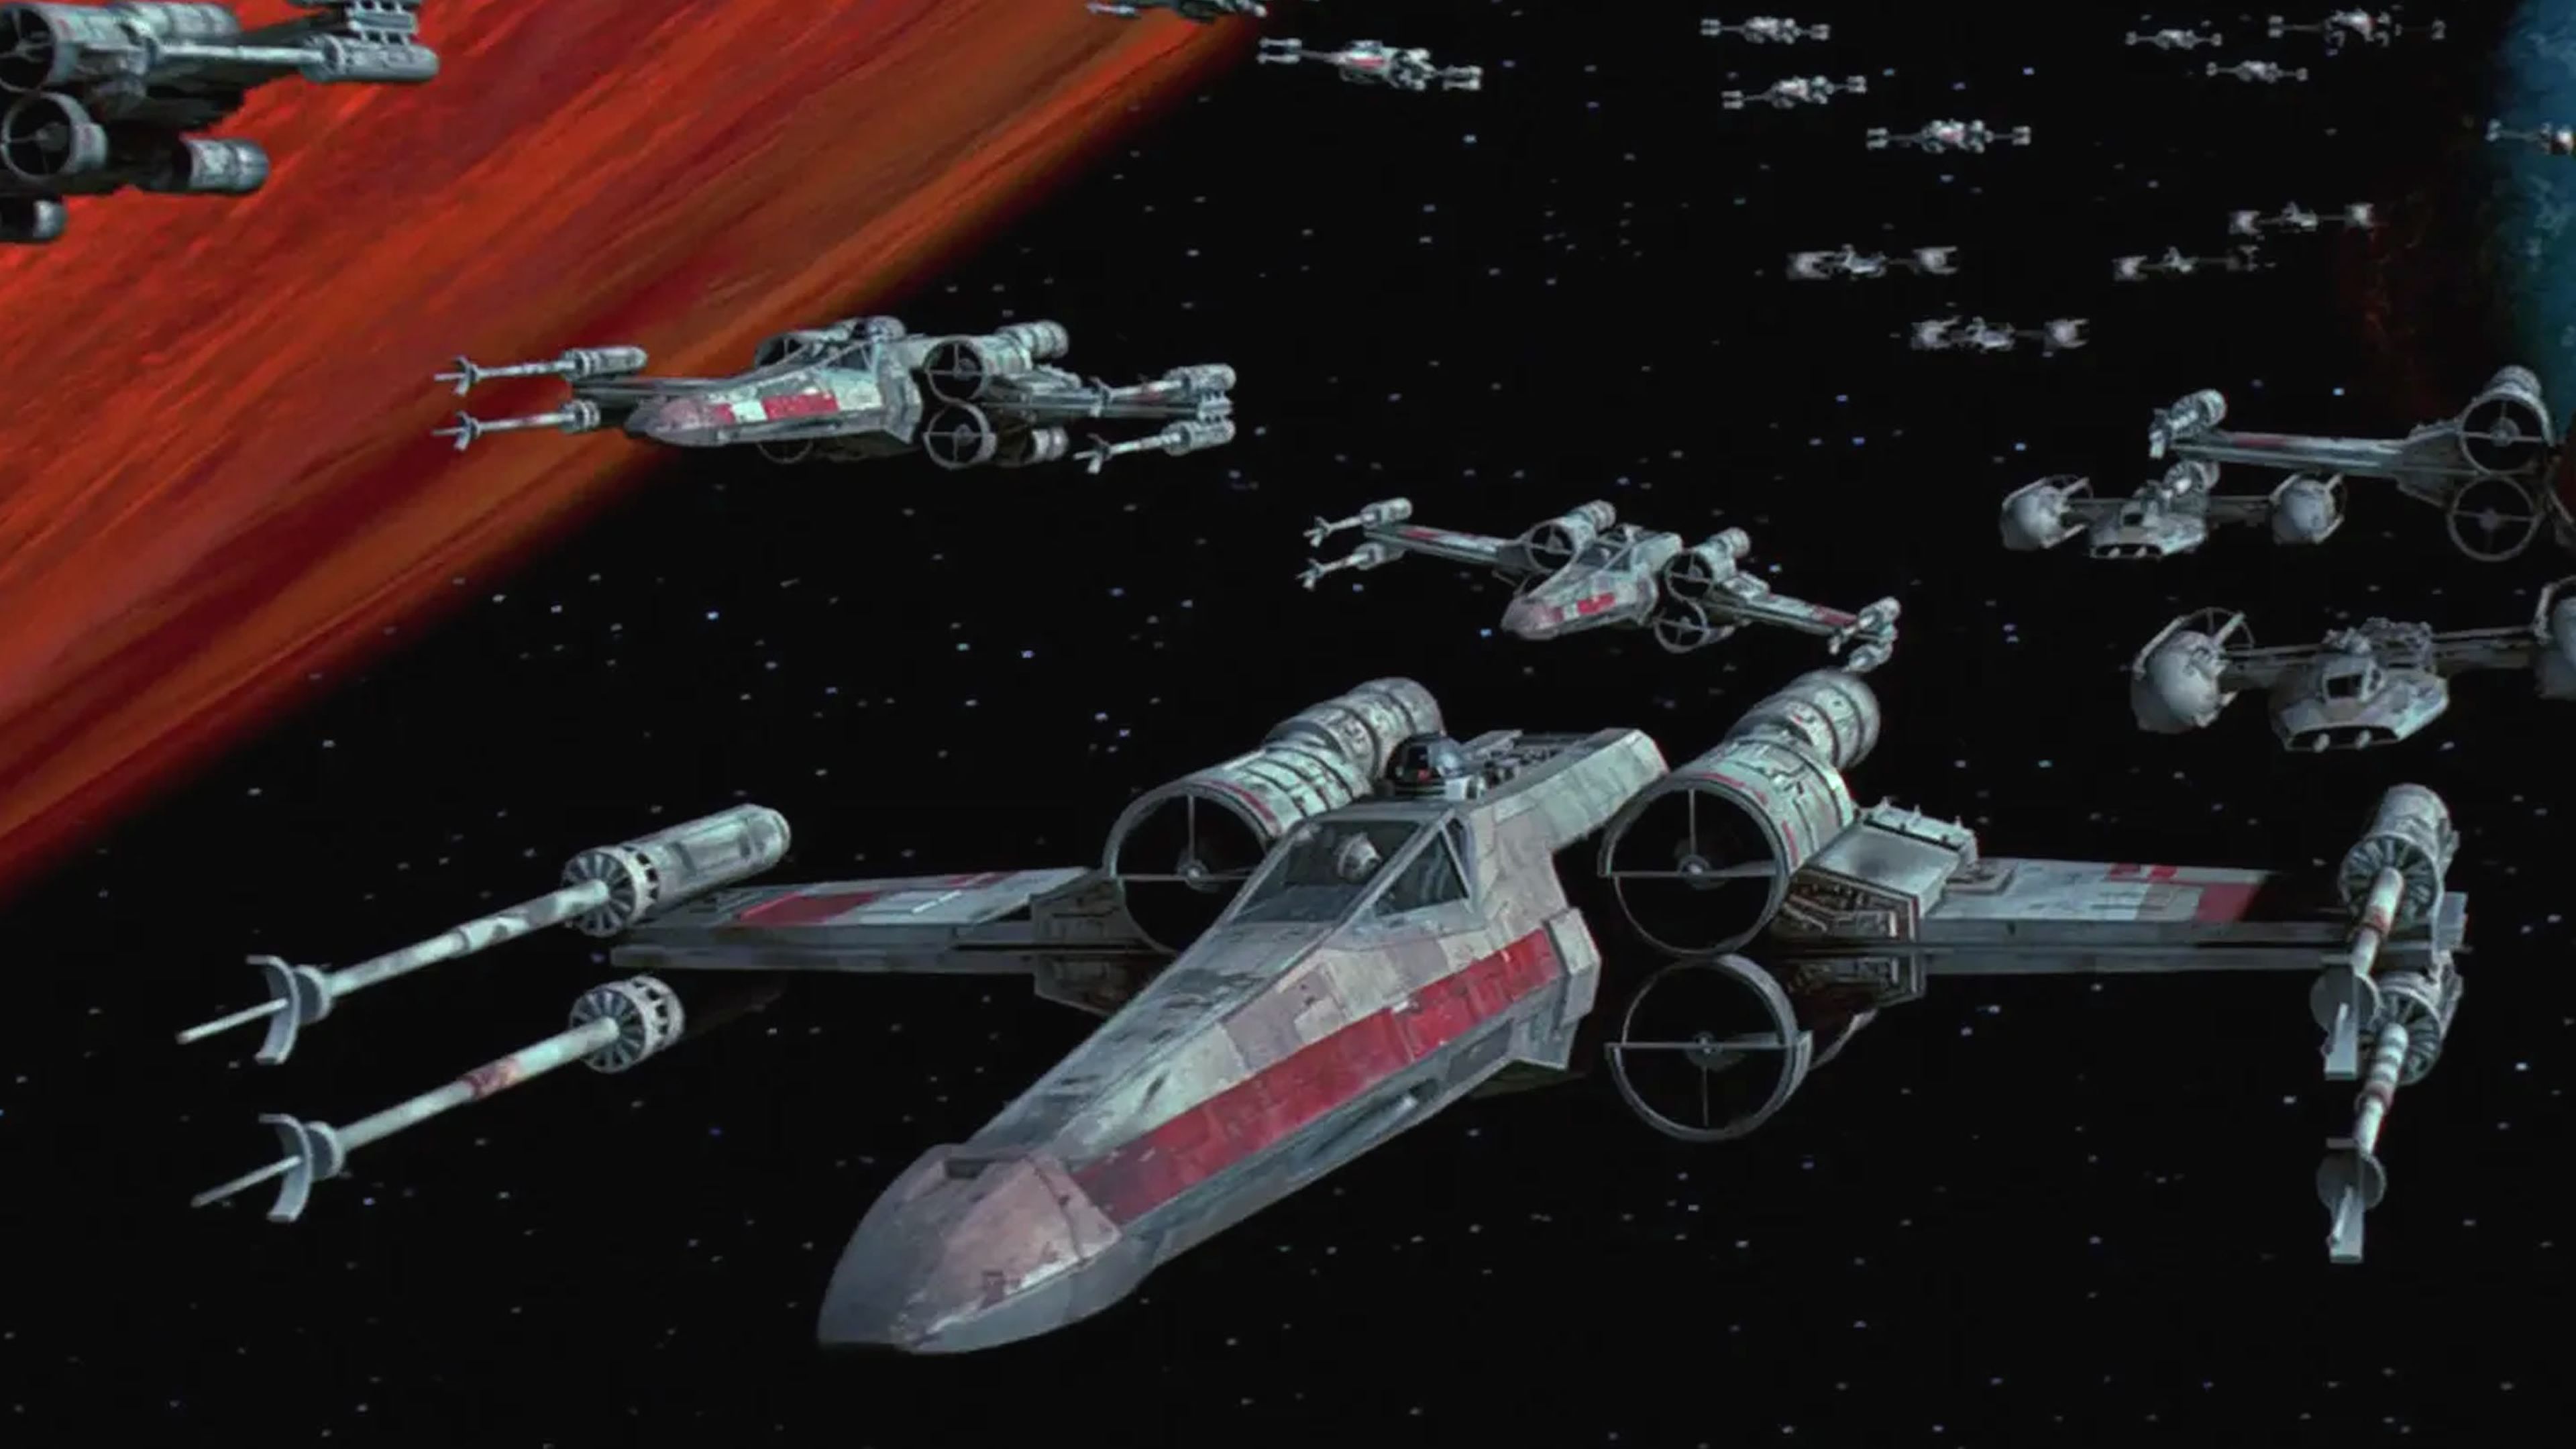 Star Wars: Episodio IV - Una nueva esperanza (1977) - Batalla de Yavin